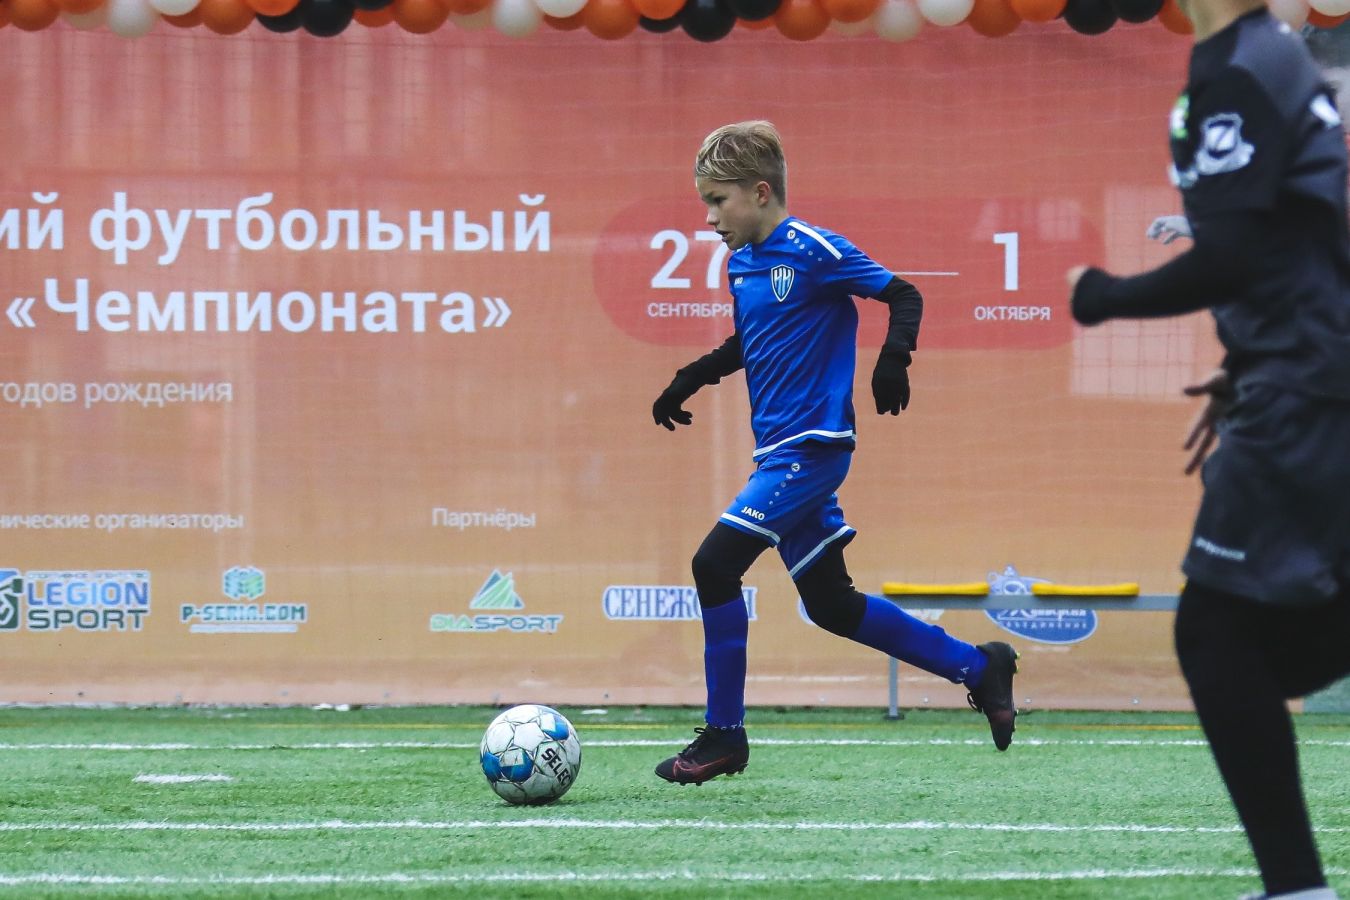 Открыта регистрация на отборочный турнир детского футбольного фестиваля «Чемпионата»